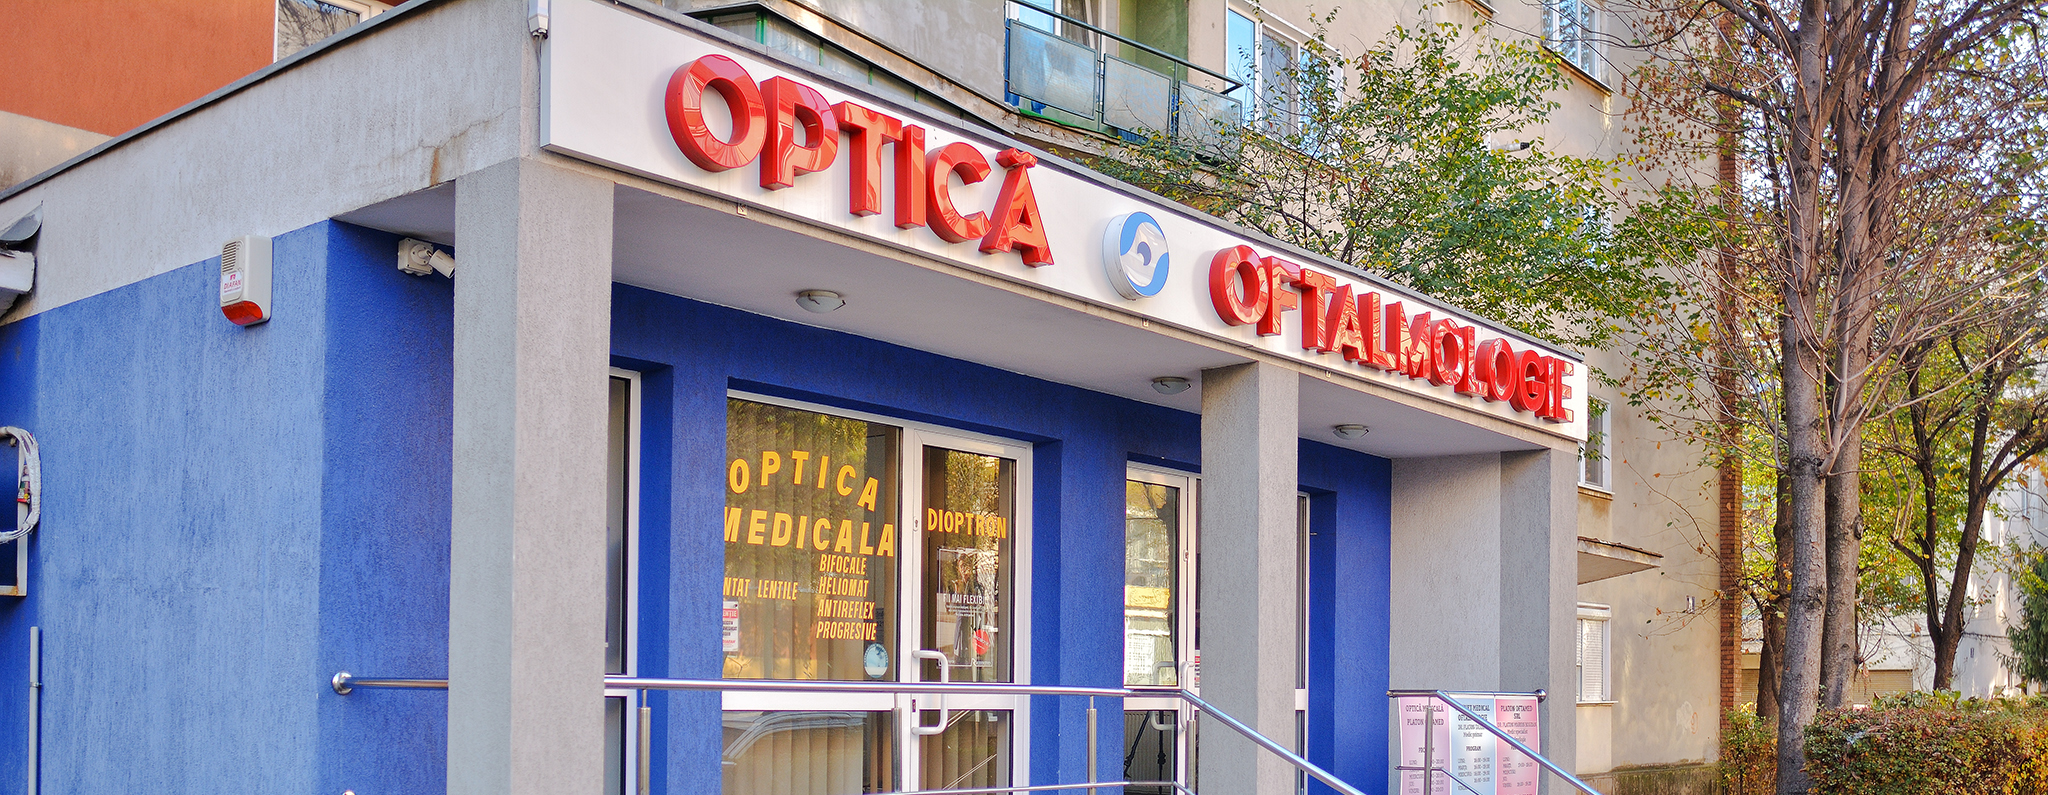 oftalmologie centru medical